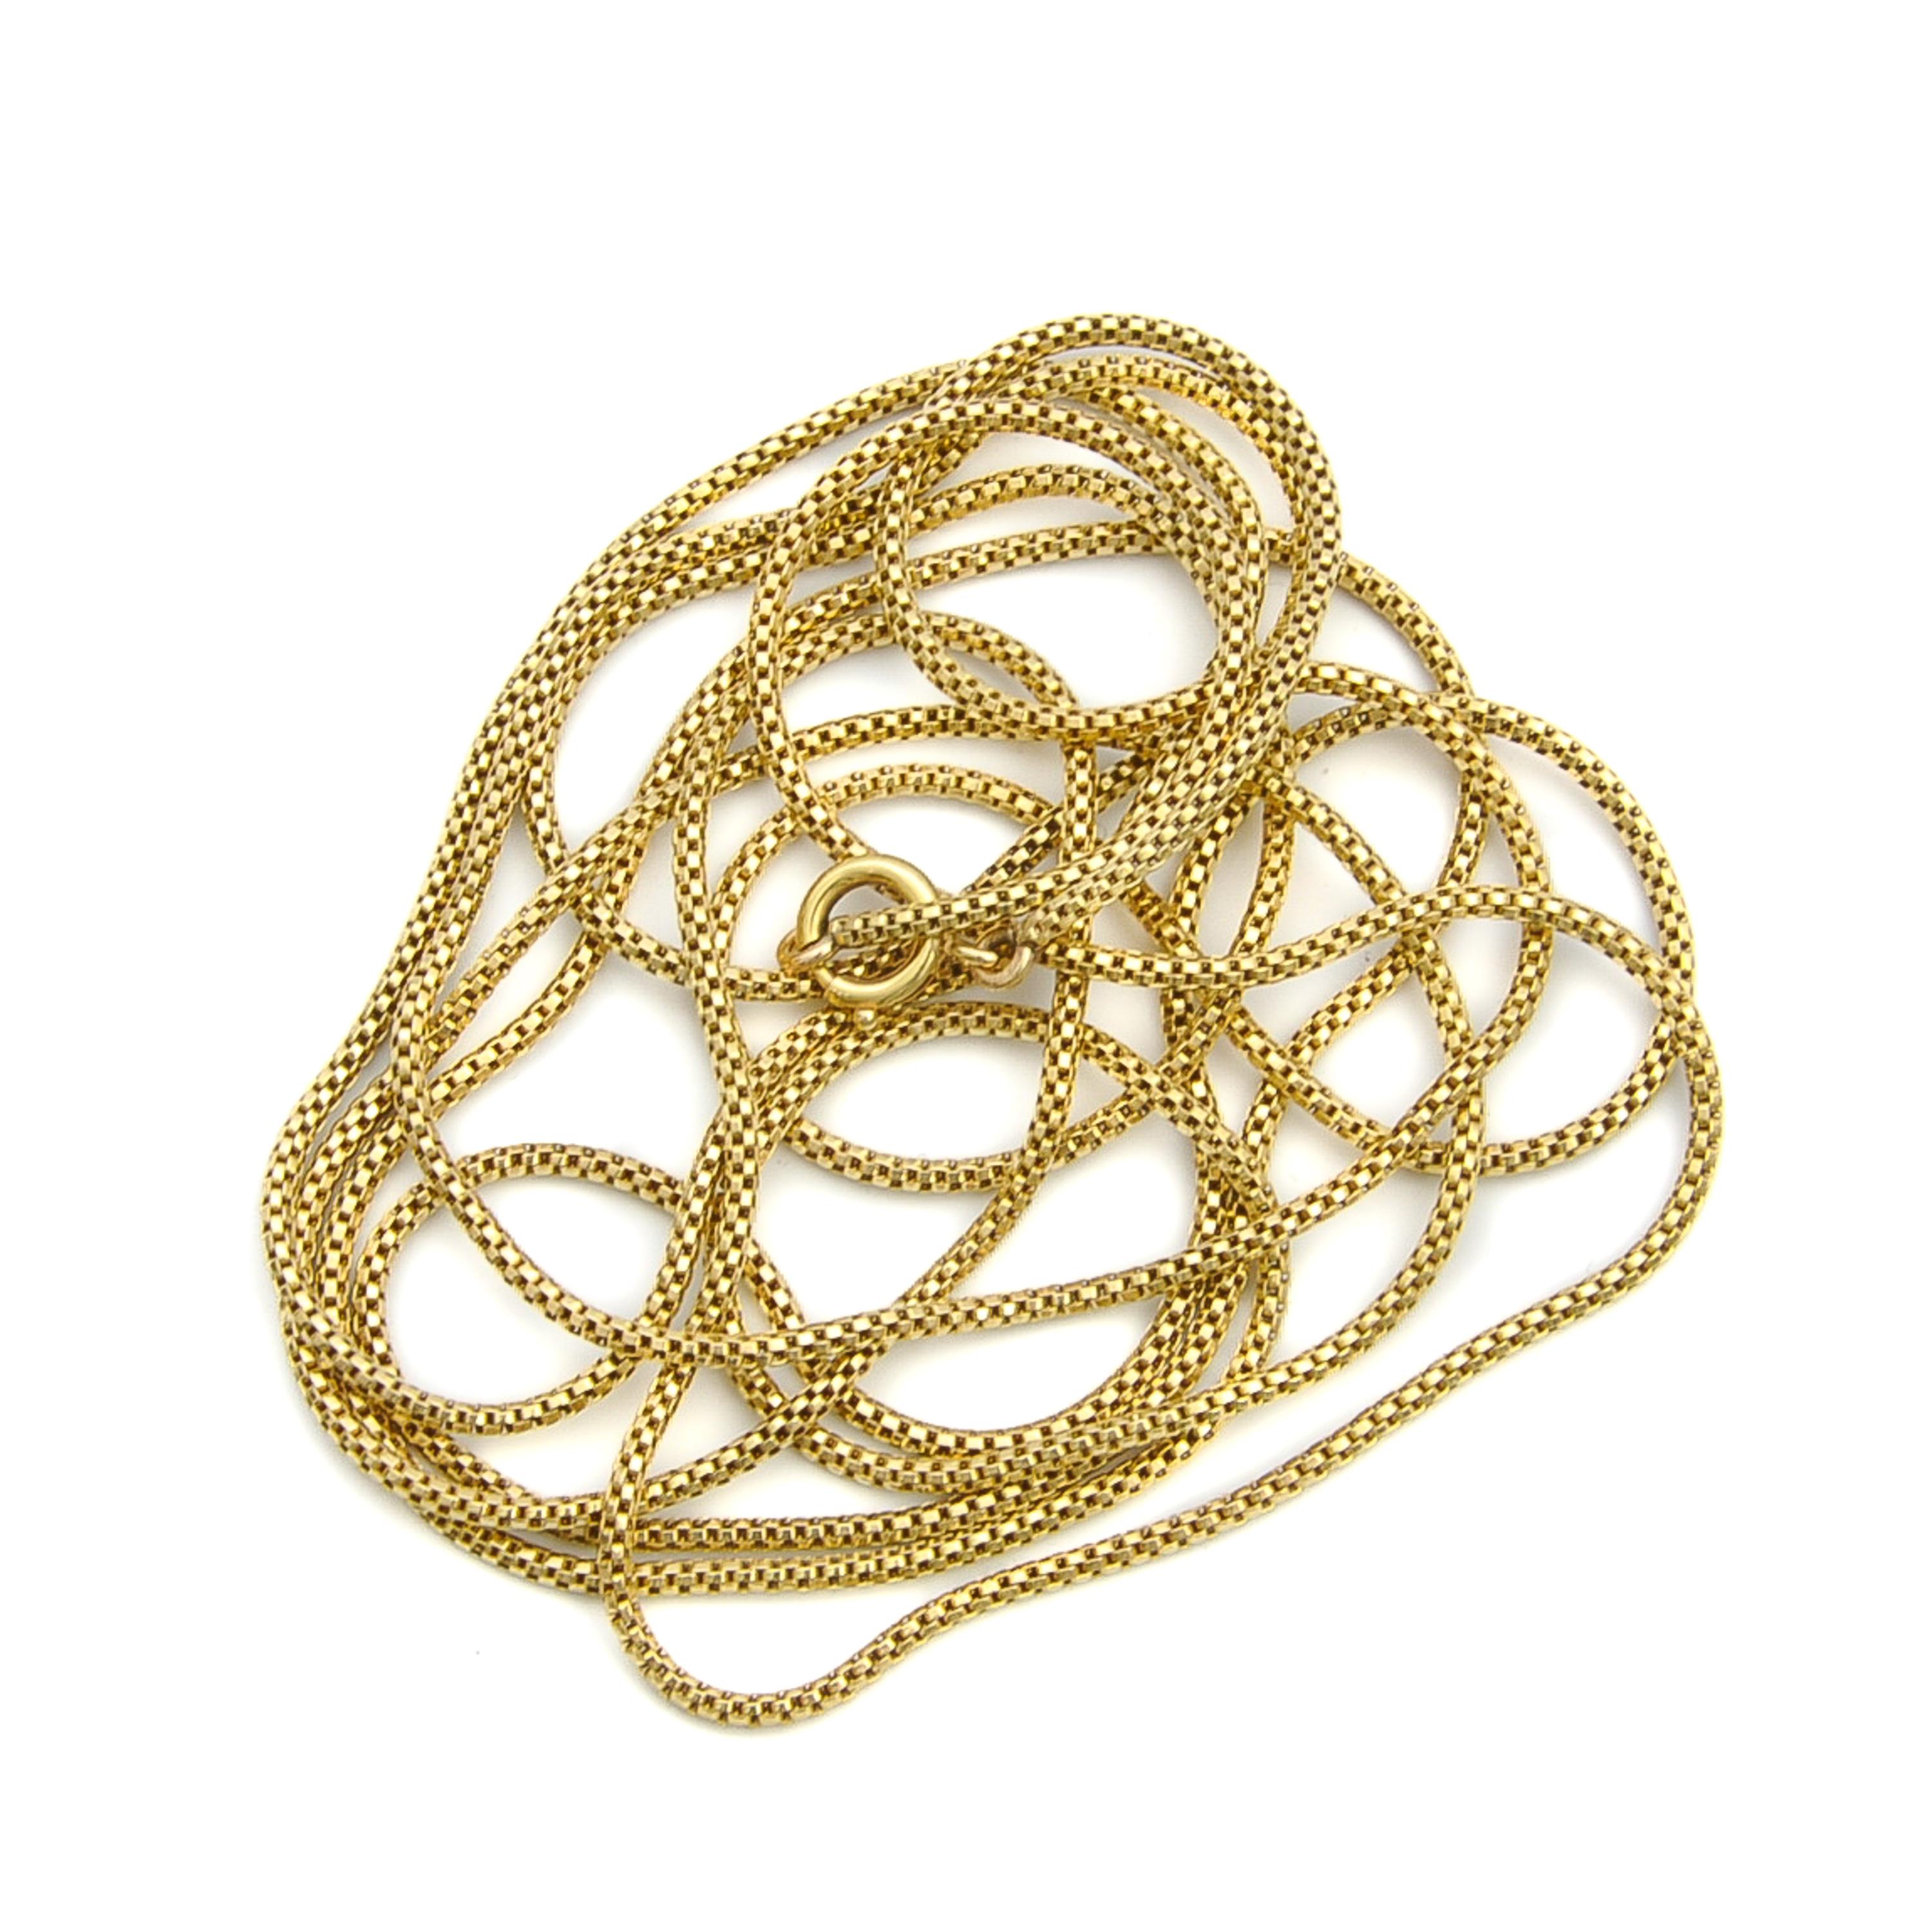 Women's or Men's 14 Karat Gold Sautoir Venetian Box Chain Necklace For Sale